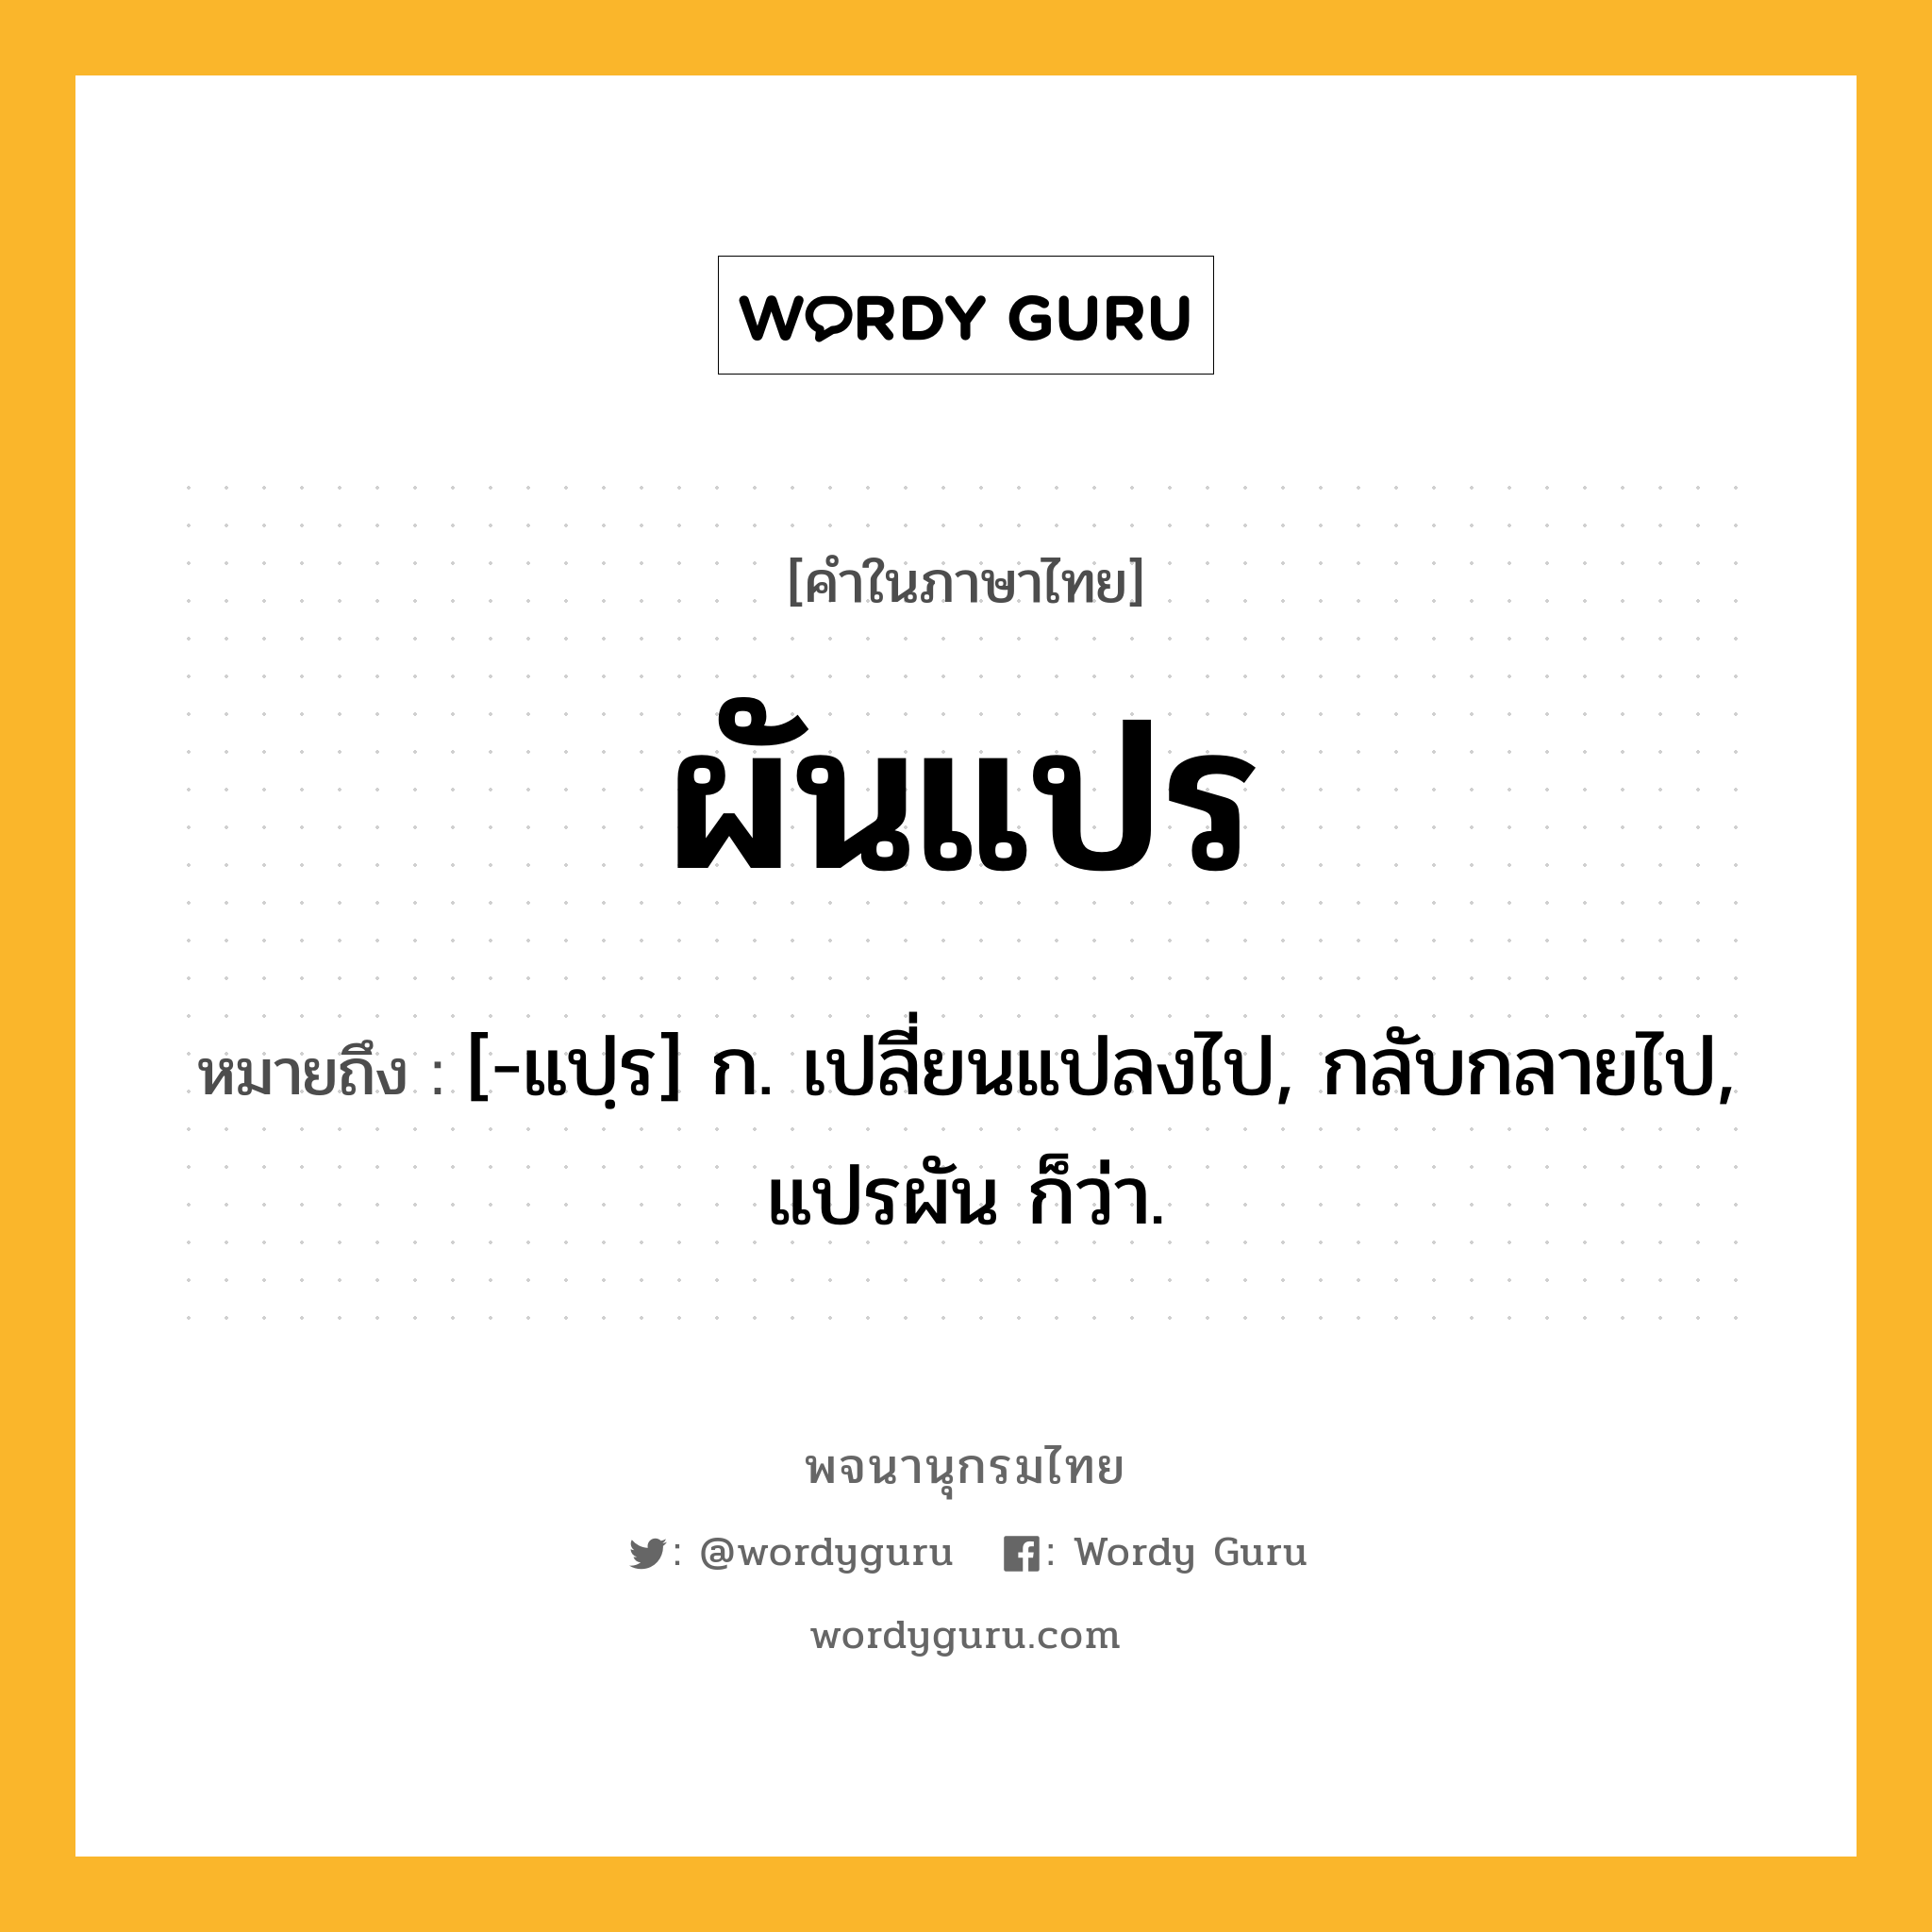 ผันแปร หมายถึงอะไร?, คำในภาษาไทย ผันแปร หมายถึง [-แปฺร] ก. เปลี่ยนแปลงไป, กลับกลายไป, แปรผัน ก็ว่า.